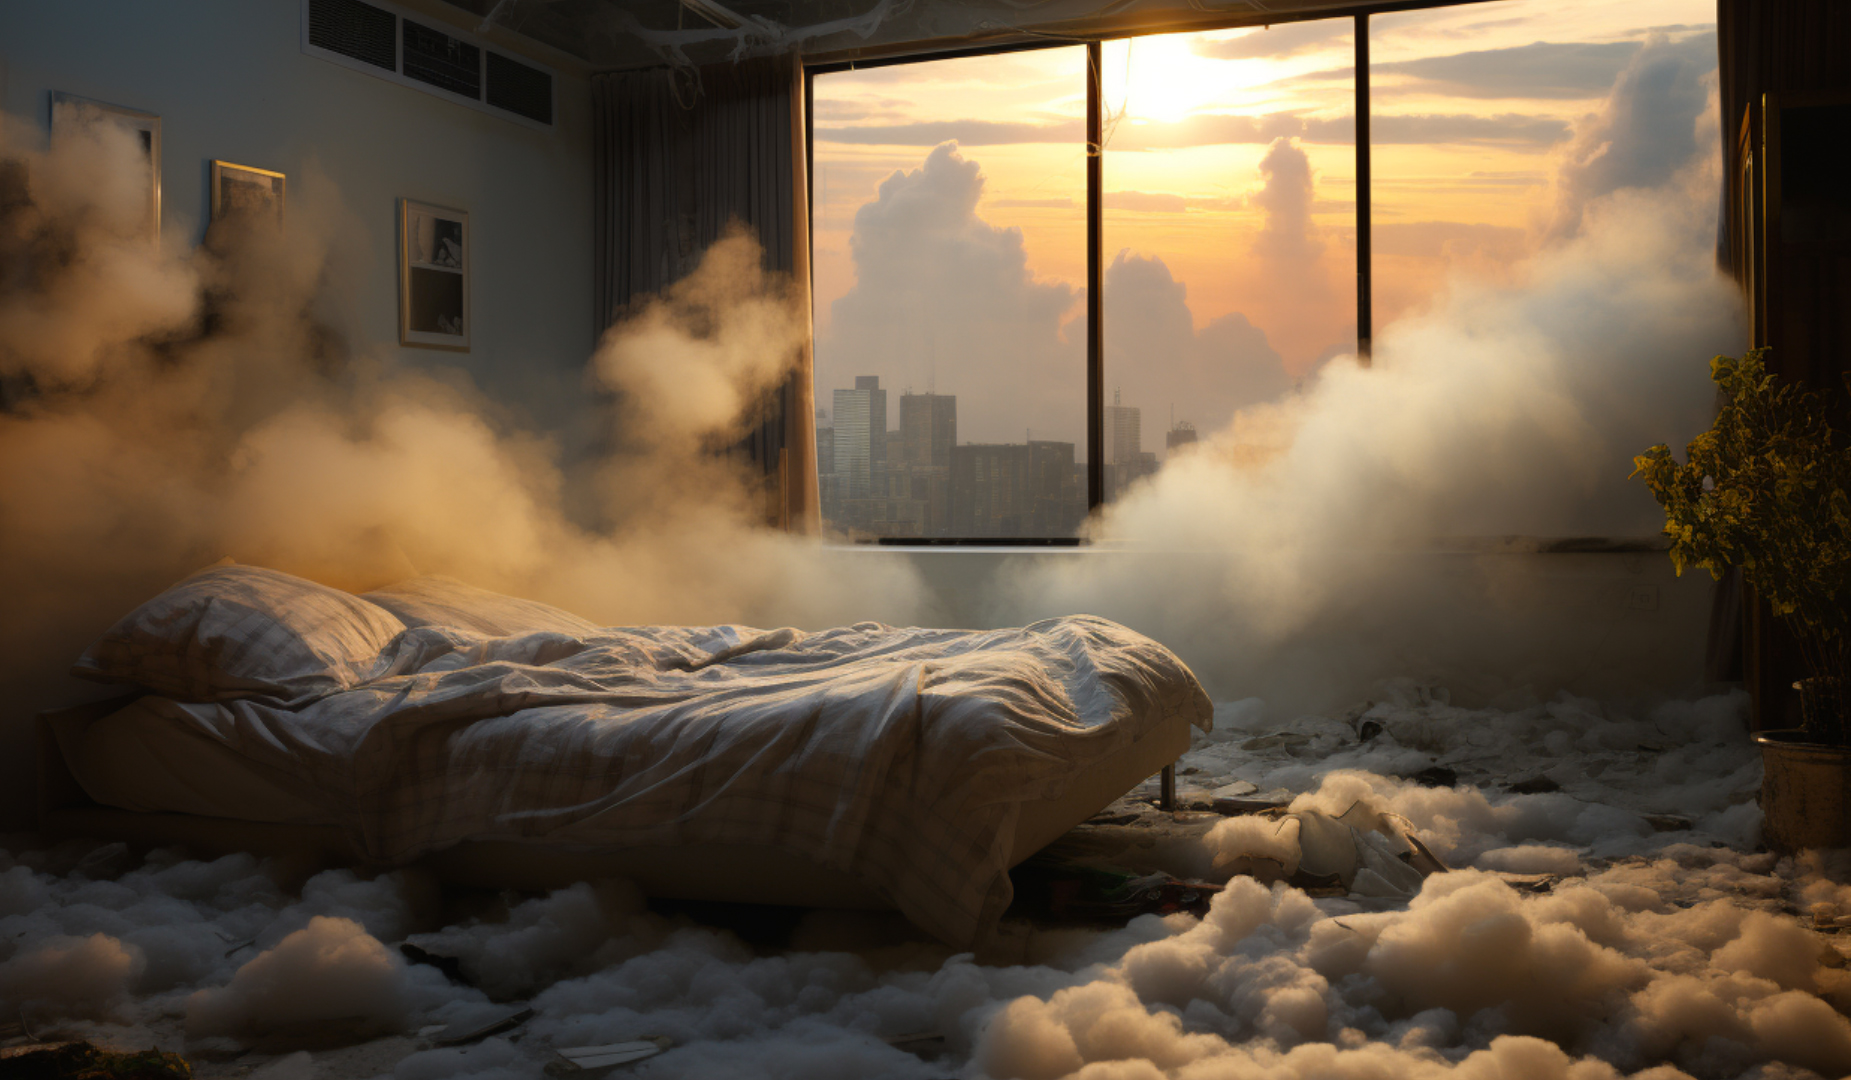 inquinamento indoor stanza letto